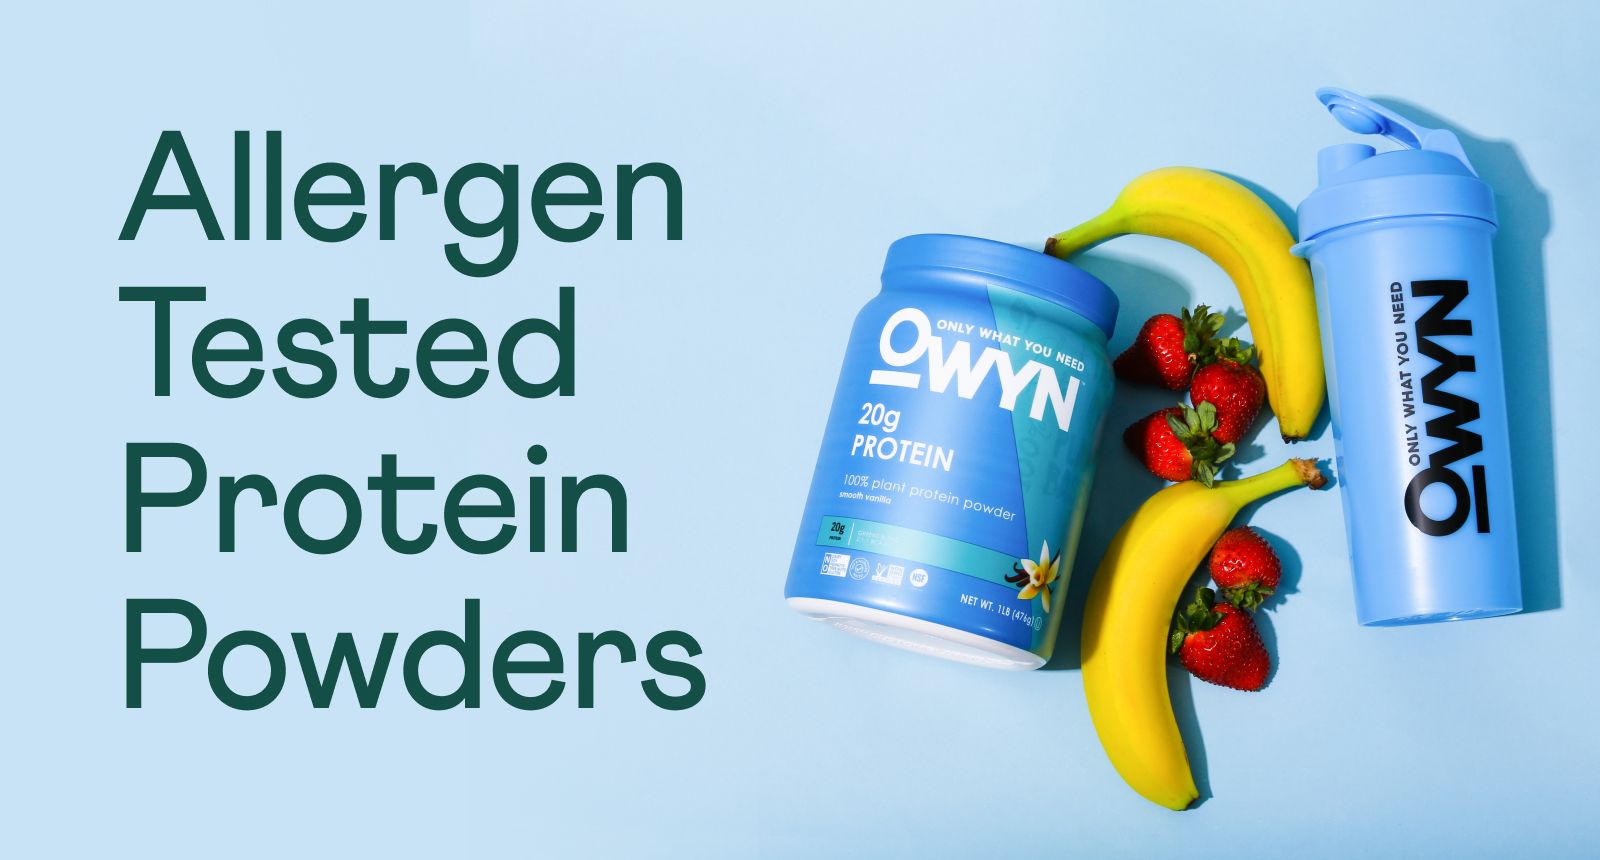 Allergen Tested Protein Powders